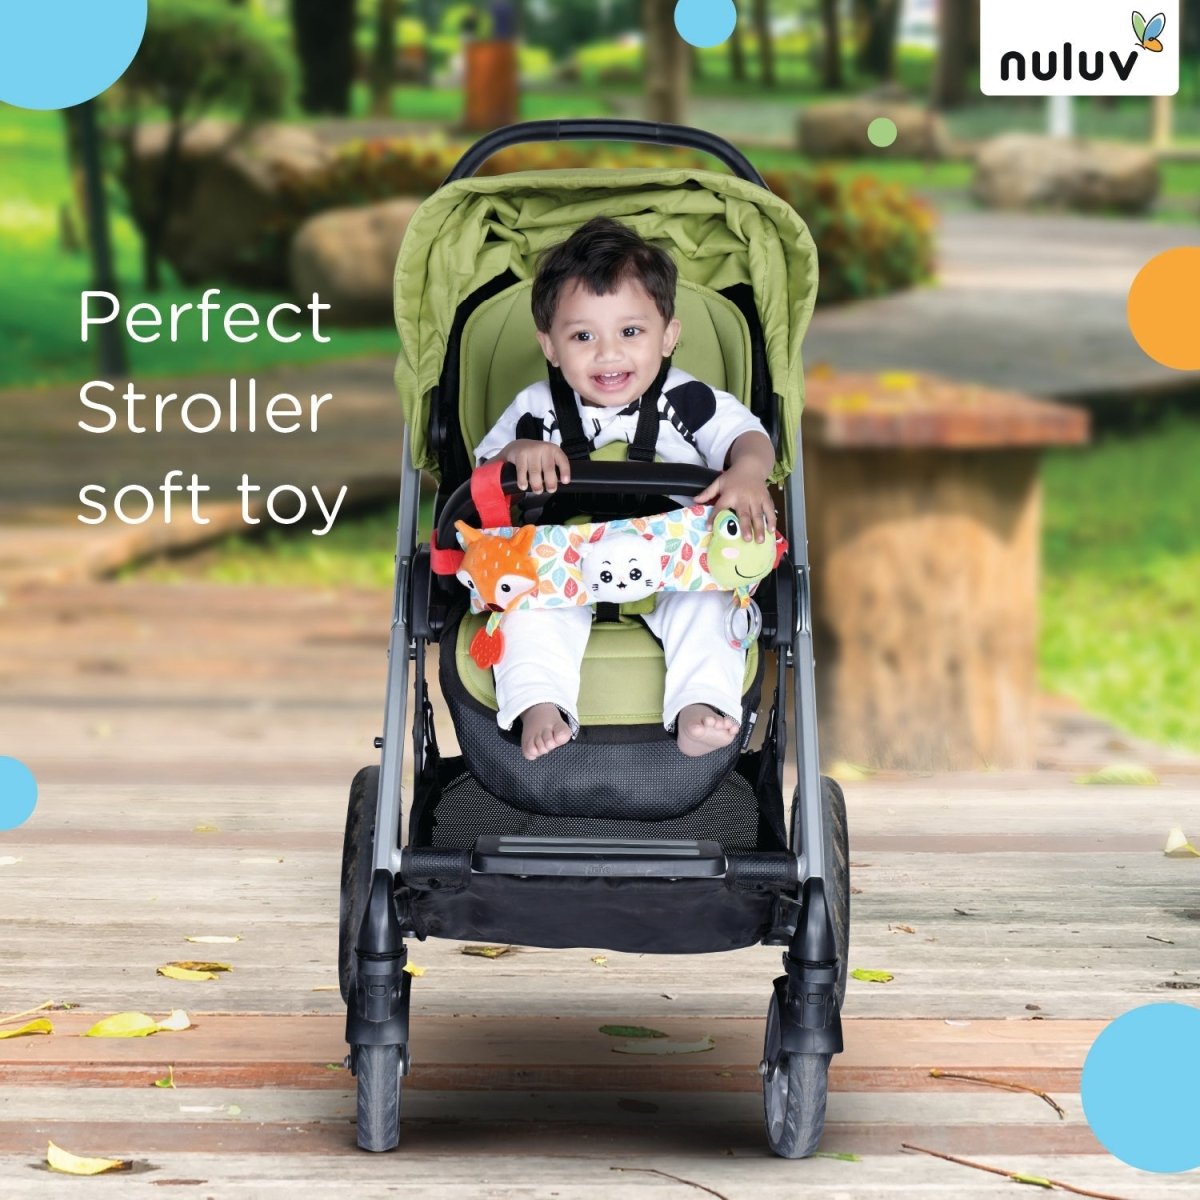 Nuluv Stroller- Cot Toy- Soft toy - NU-I-0013